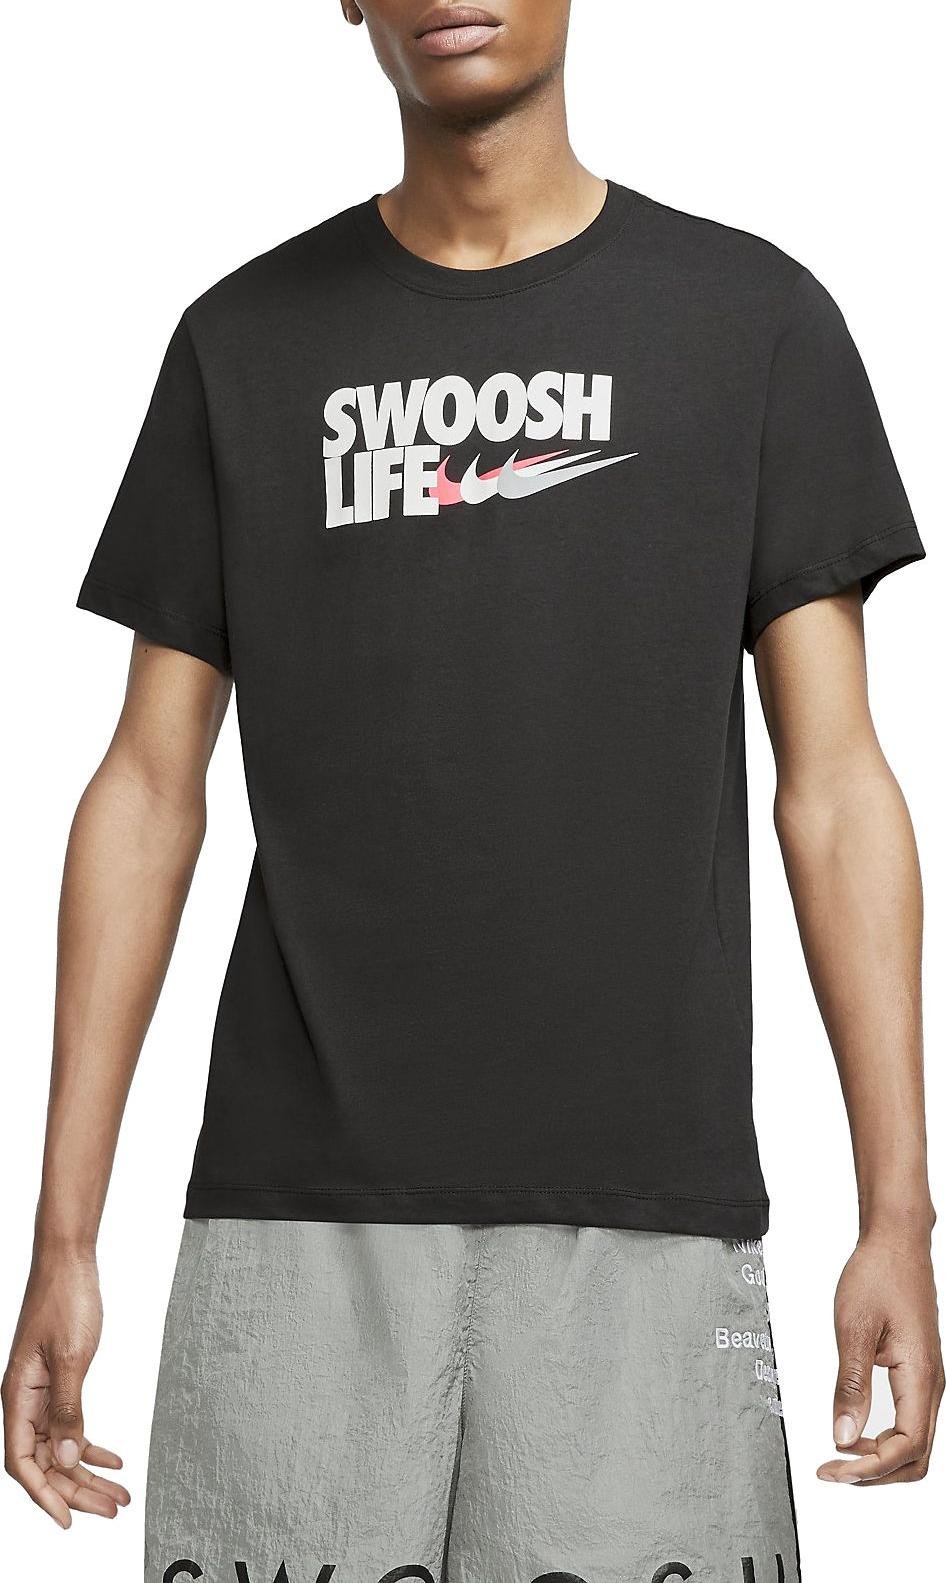 Pánské tričko s krátkým rukávem Nike Sportswear Core